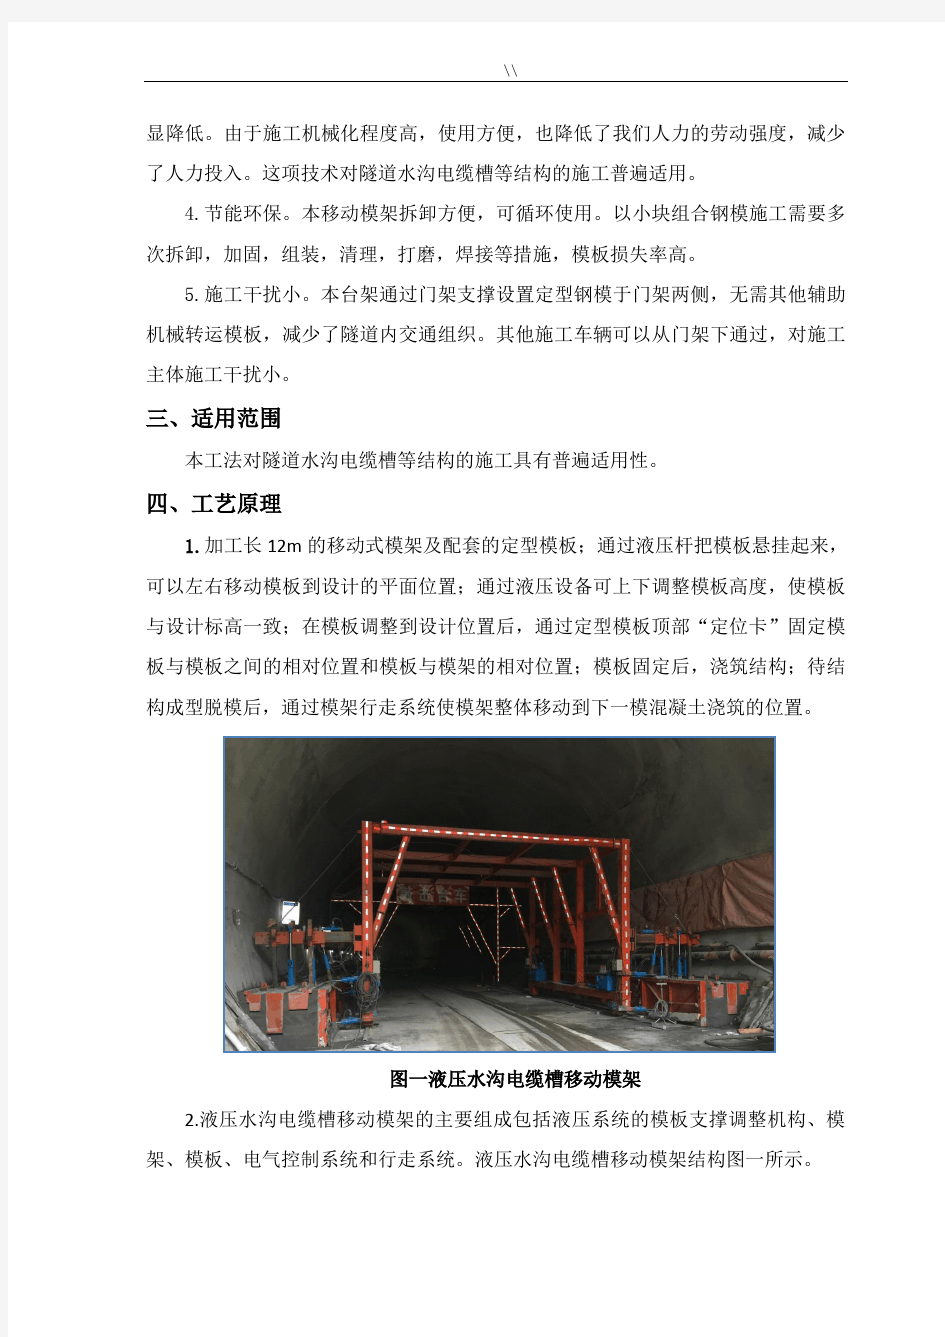 隧道水沟电缆槽自动化台车项目施工工法